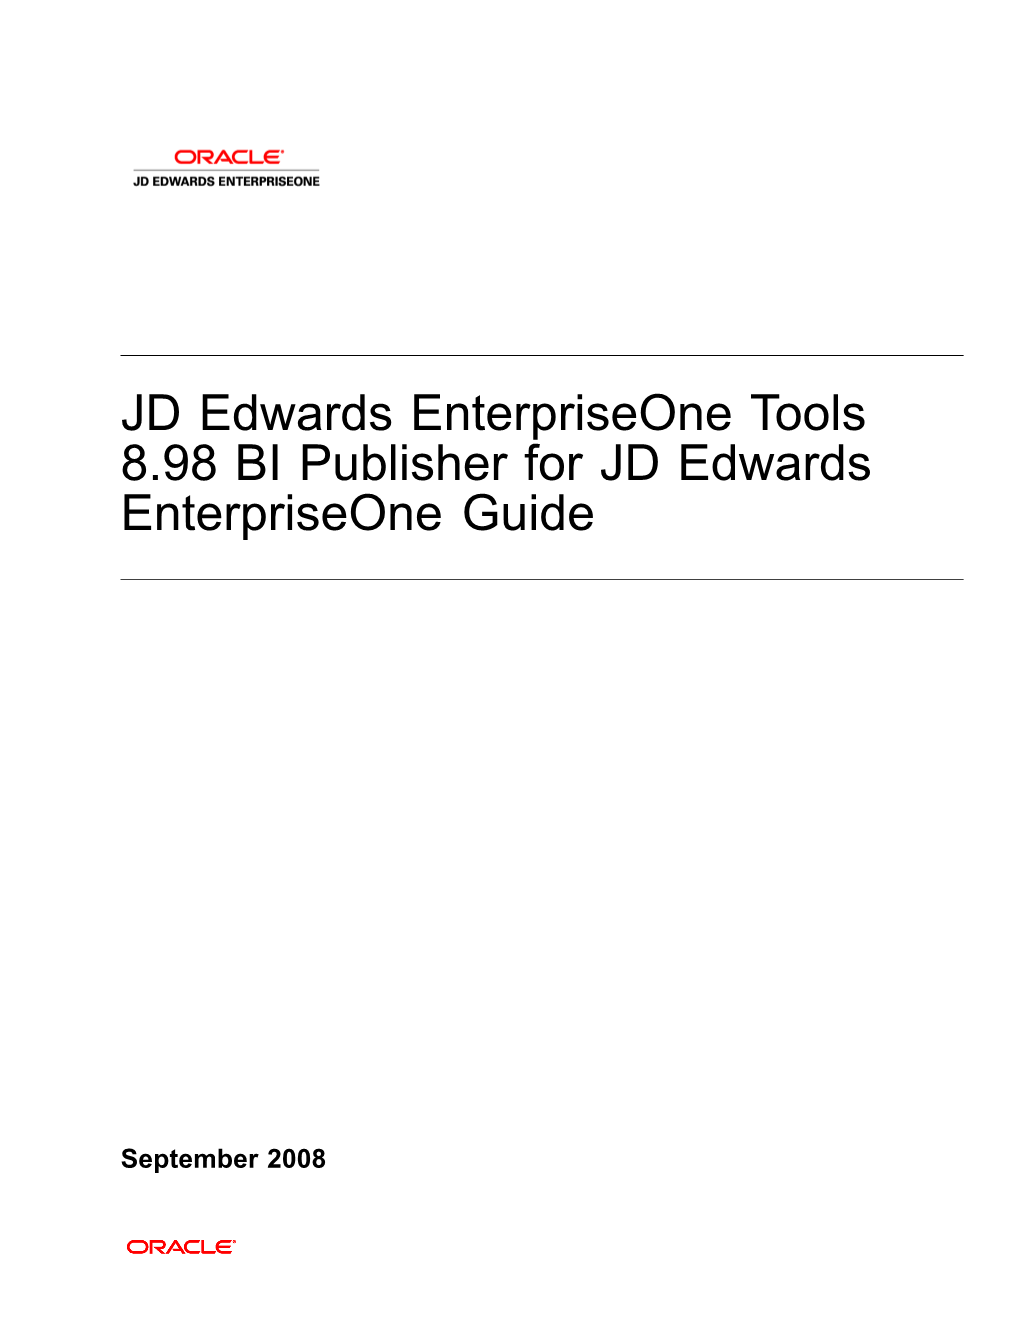 BI Publisher for JD Edwards Enterpriseone Guide